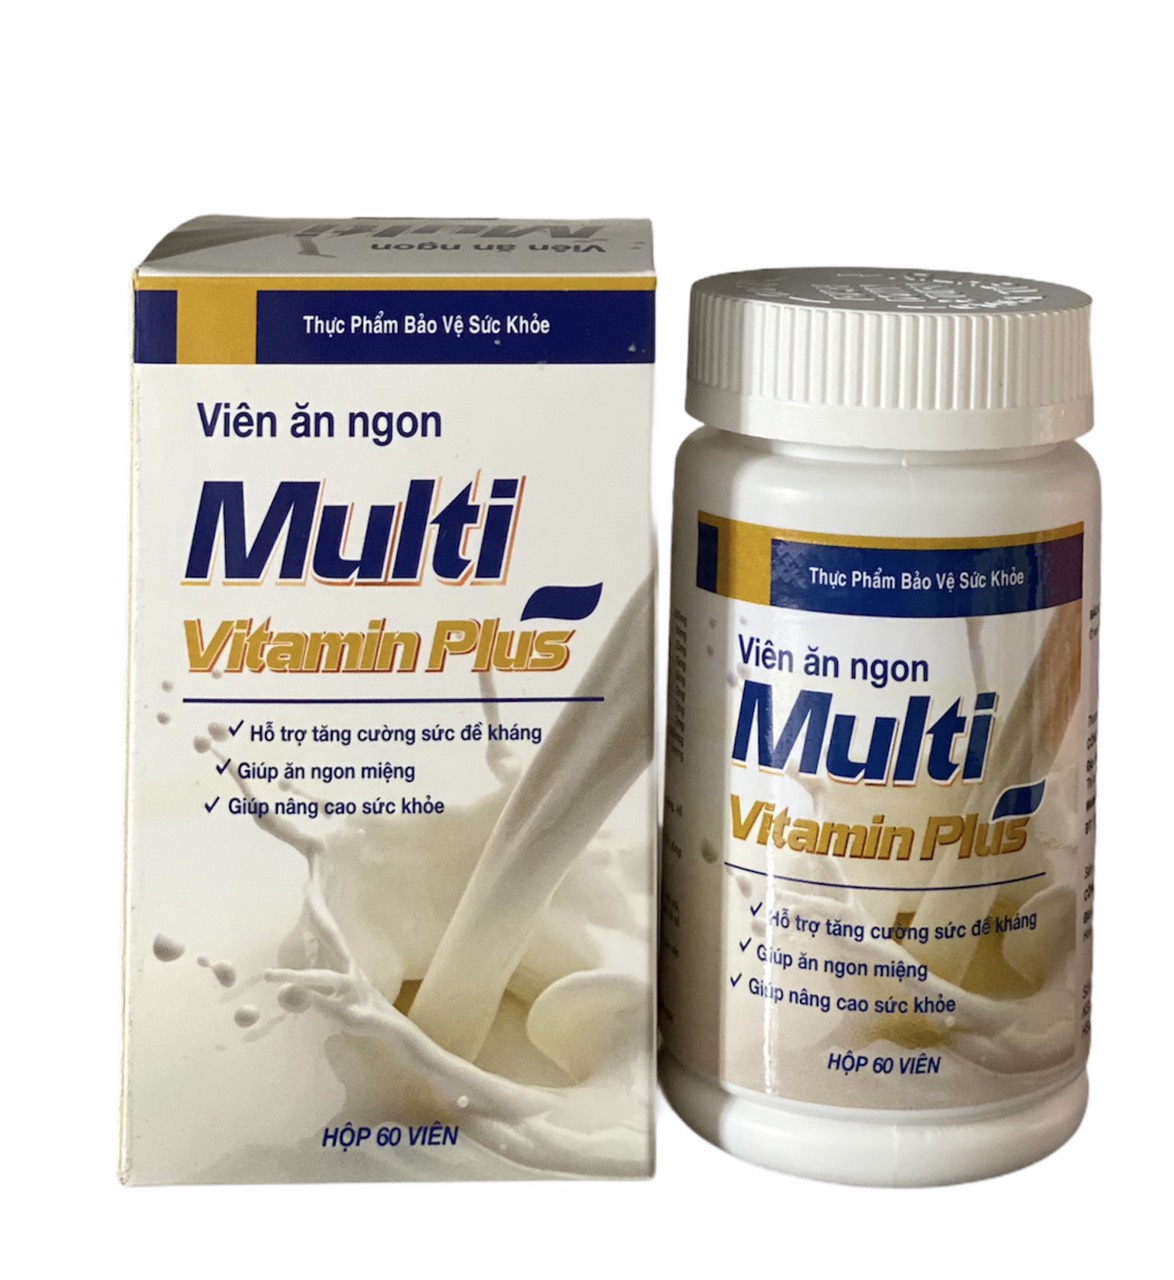 Viên Ăn Ngon Multi Vitamin Plus, hỗ trợ tăng cường sức đề kháng cơ thể